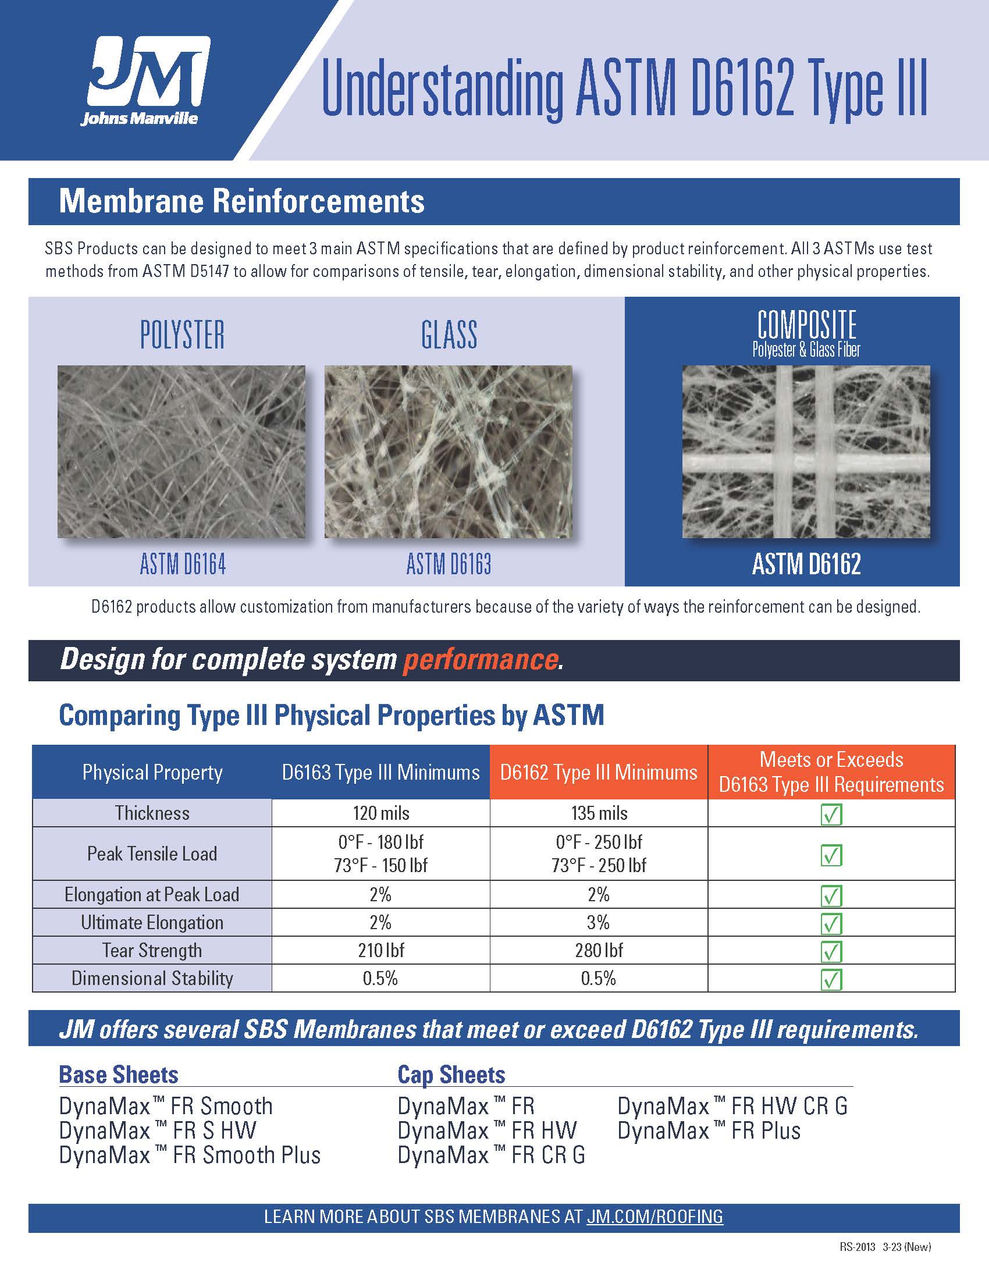 Understanding ASTM D6162 Type III Membranes